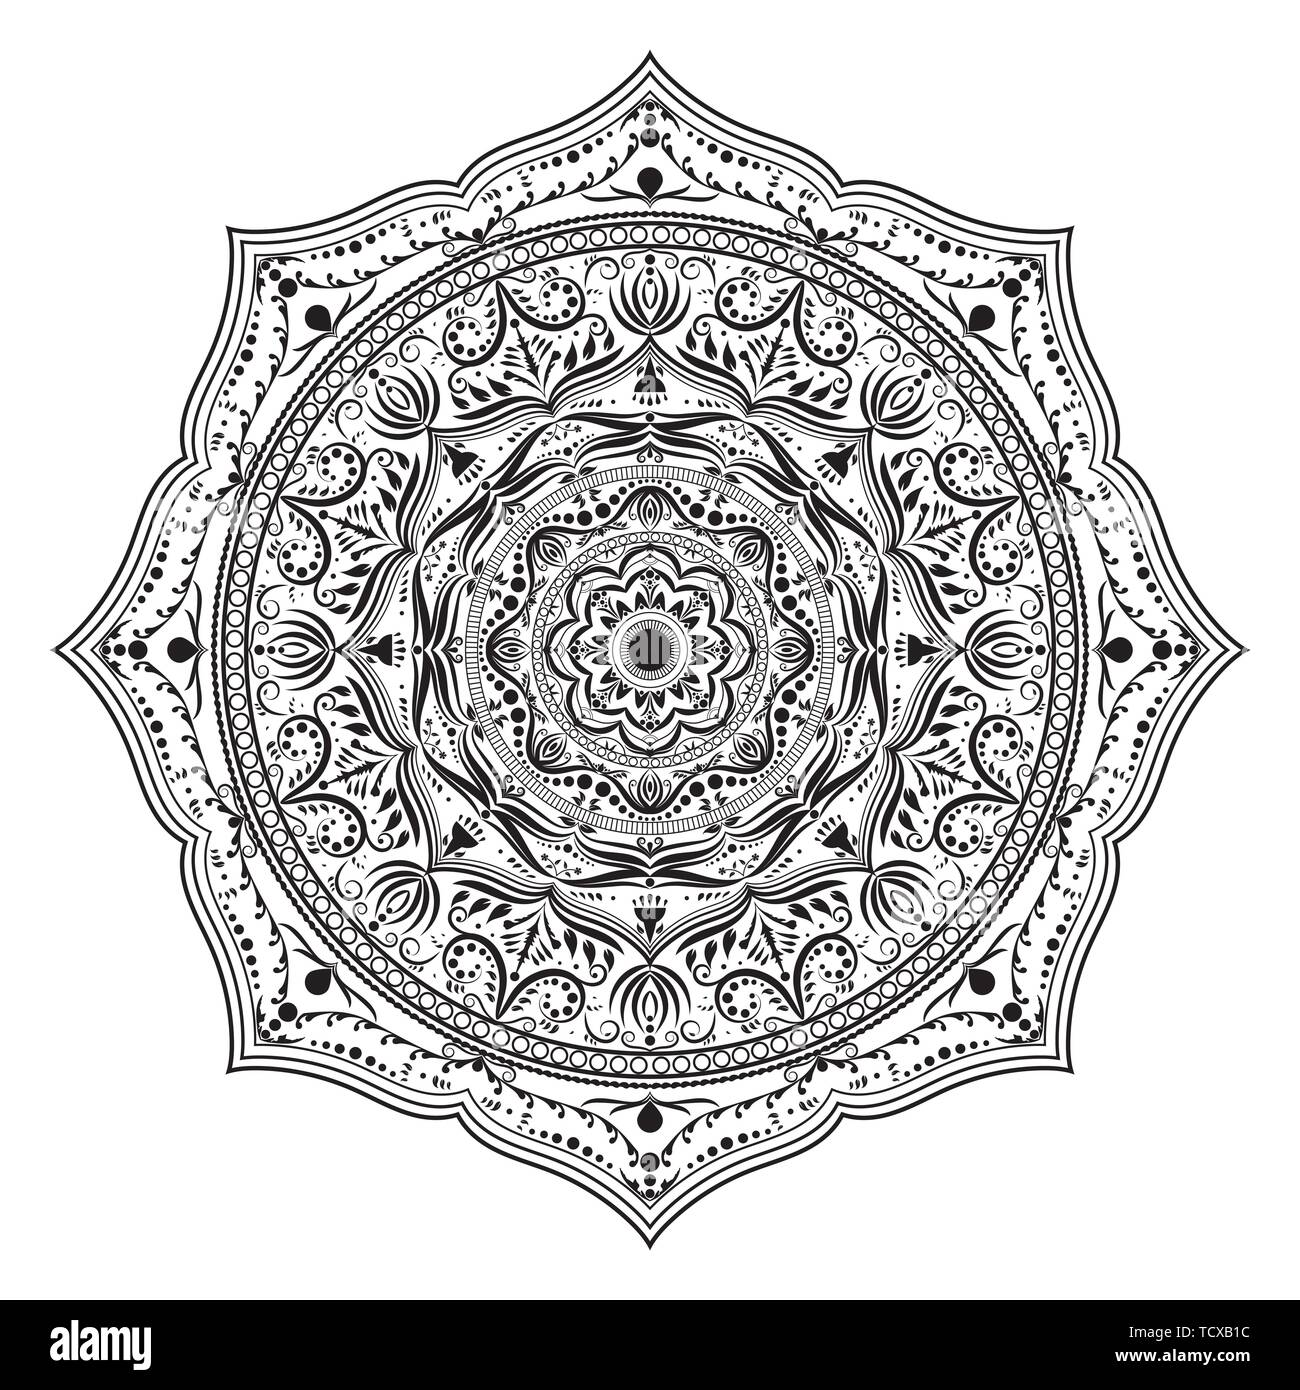 Mandala runde Ornament, eingekreiste Element für Design. Schwarze und weiße Blume Muster auf weißem Hintergrund. Hand gezeichnet. Vector Illustration. Stock Vektor